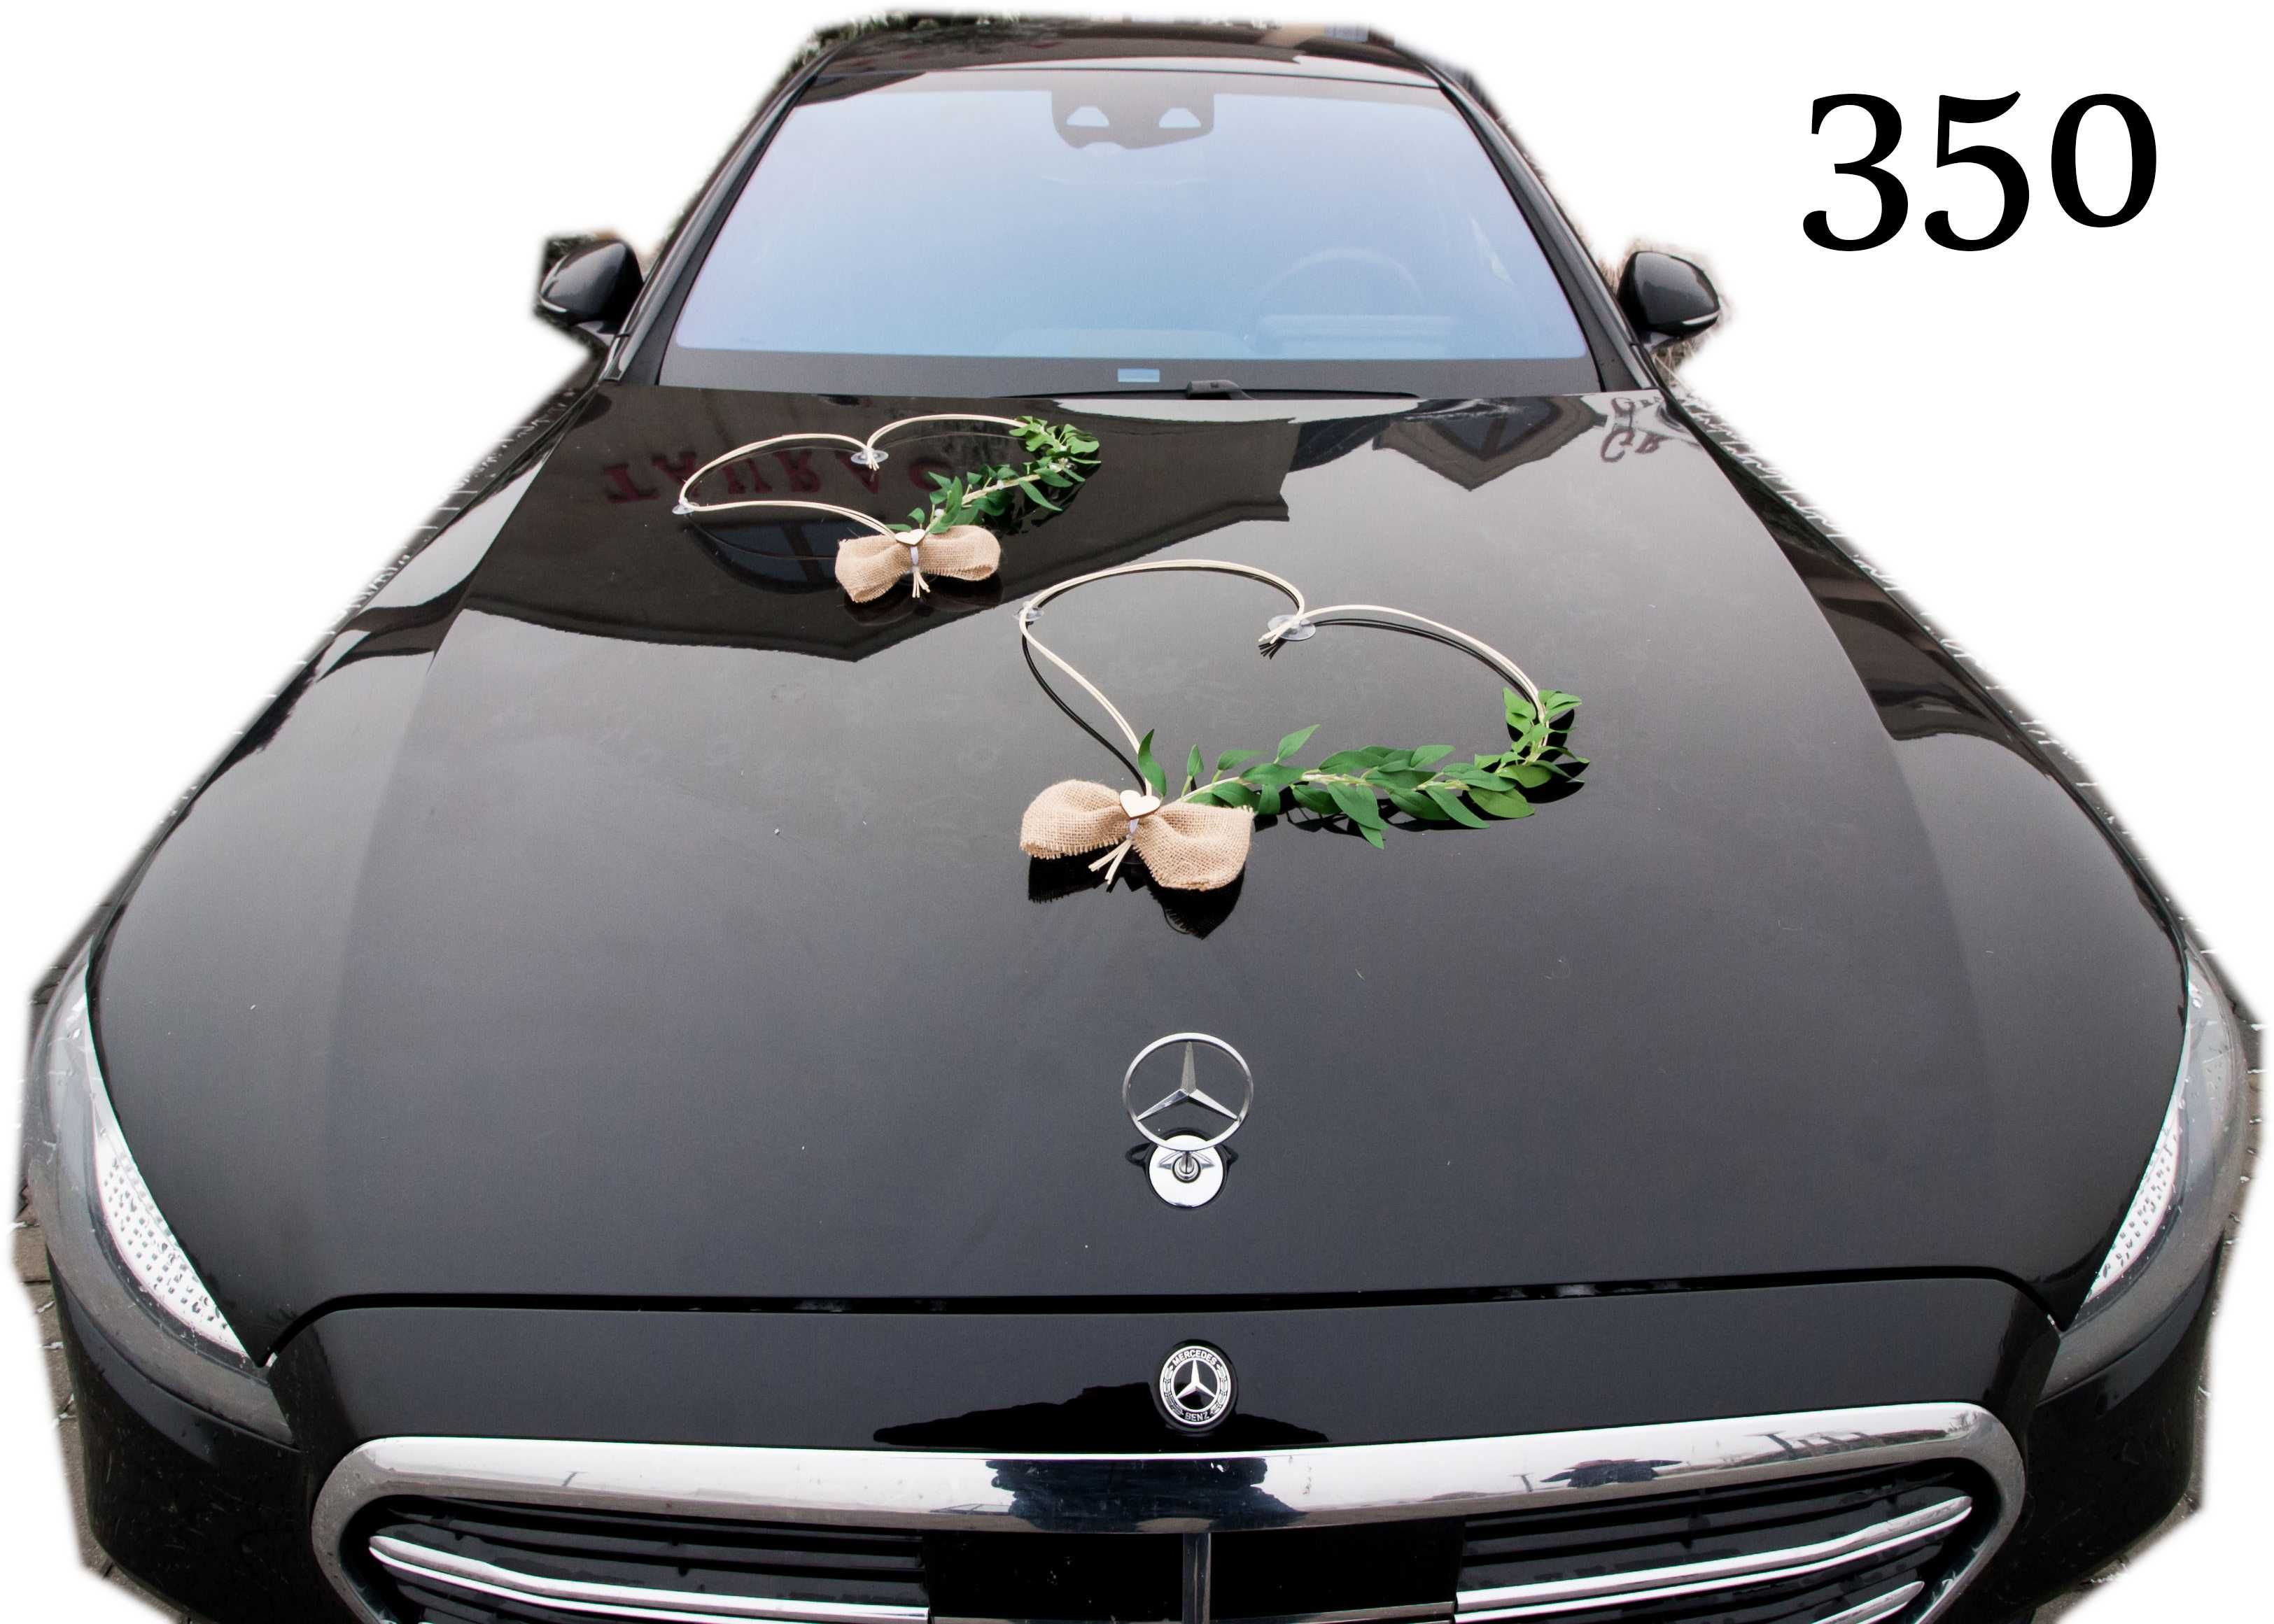 ŁATWY SZYBKI MONTAŻ dekoracja na samochód ozdoby auto ślub 350